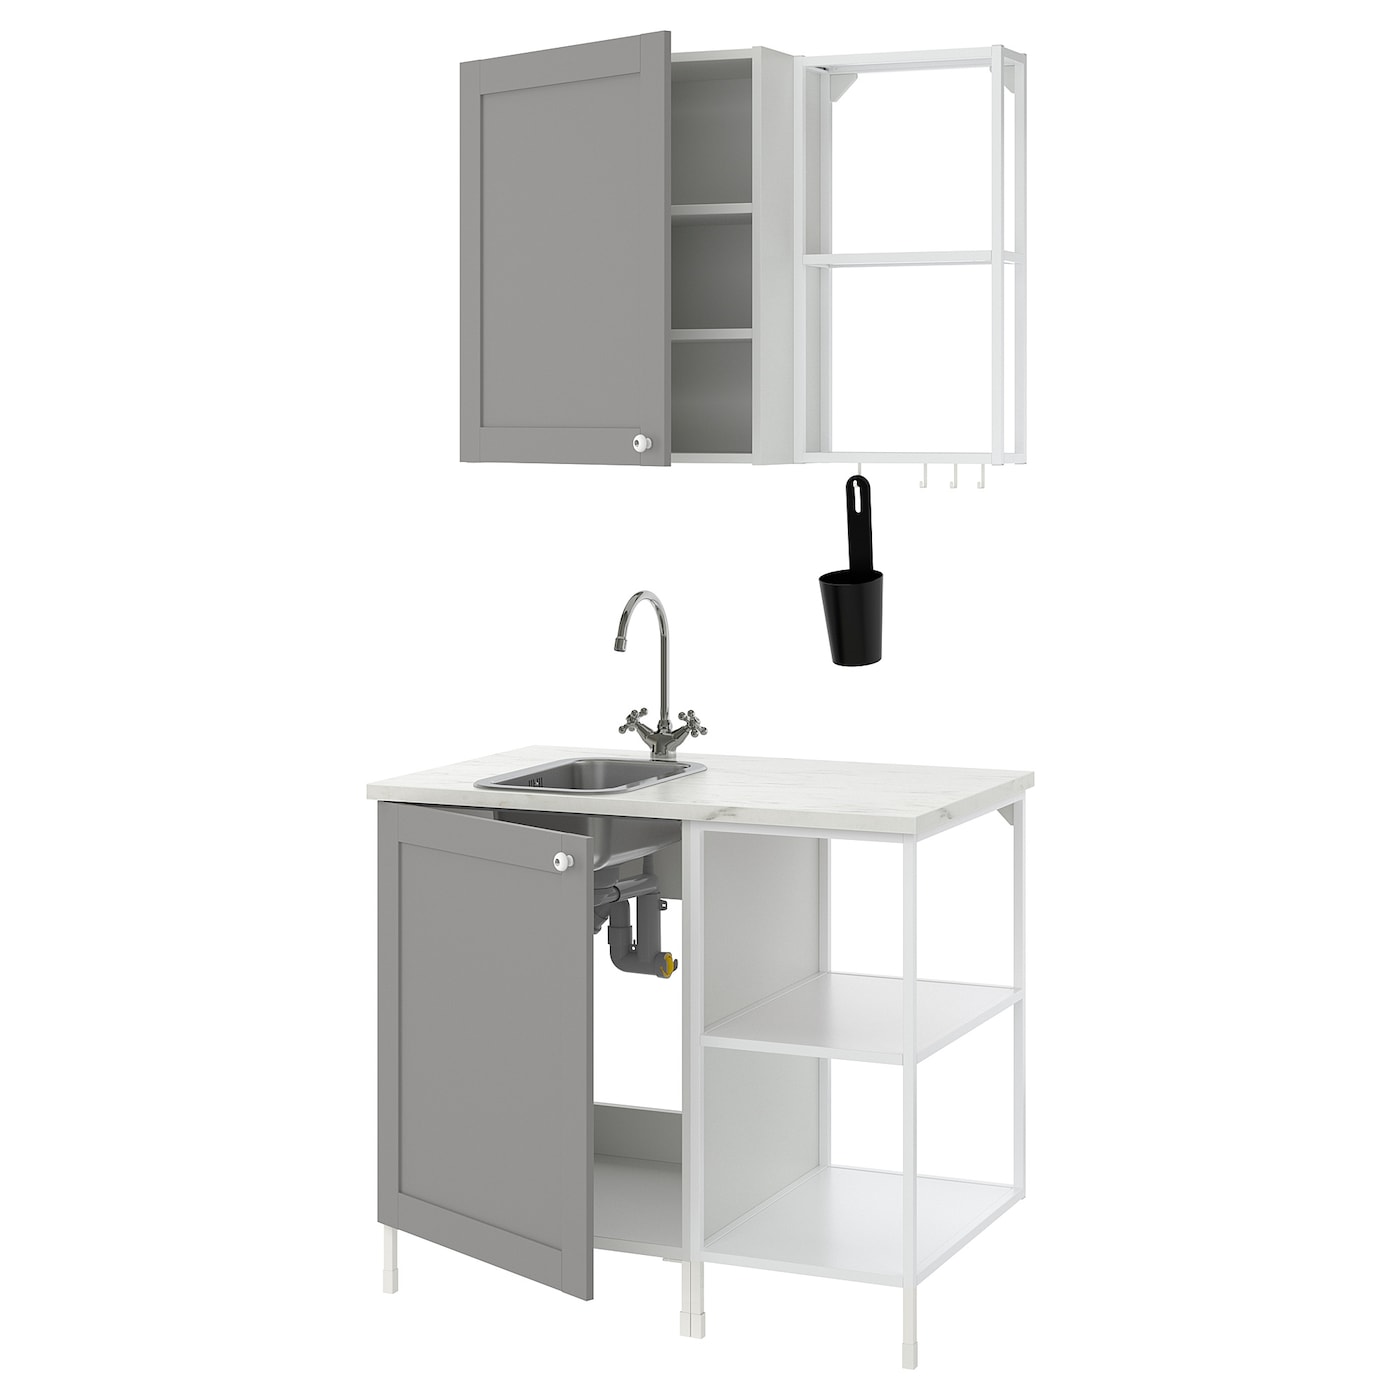 Комбинация для кухонного хранения  - ENHET  IKEA/ ЭНХЕТ ИКЕА, 103x63,5x222 см, белый/серый